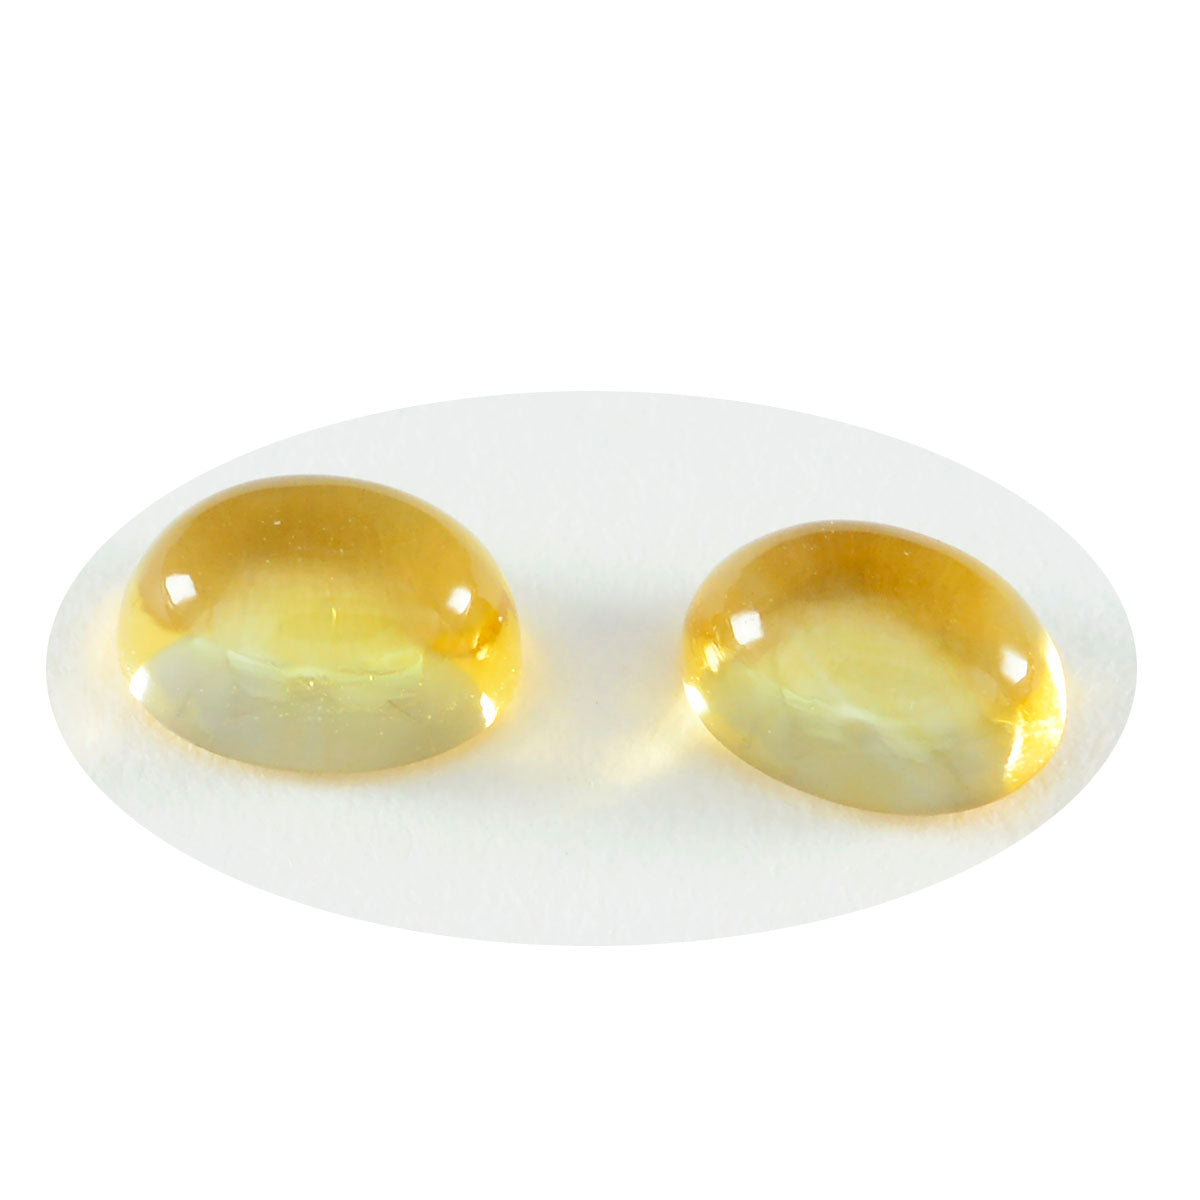 riyogems 1шт желтый цитрин кабошон 10х14 мм овальной формы, драгоценные камни удивительного качества, россыпь